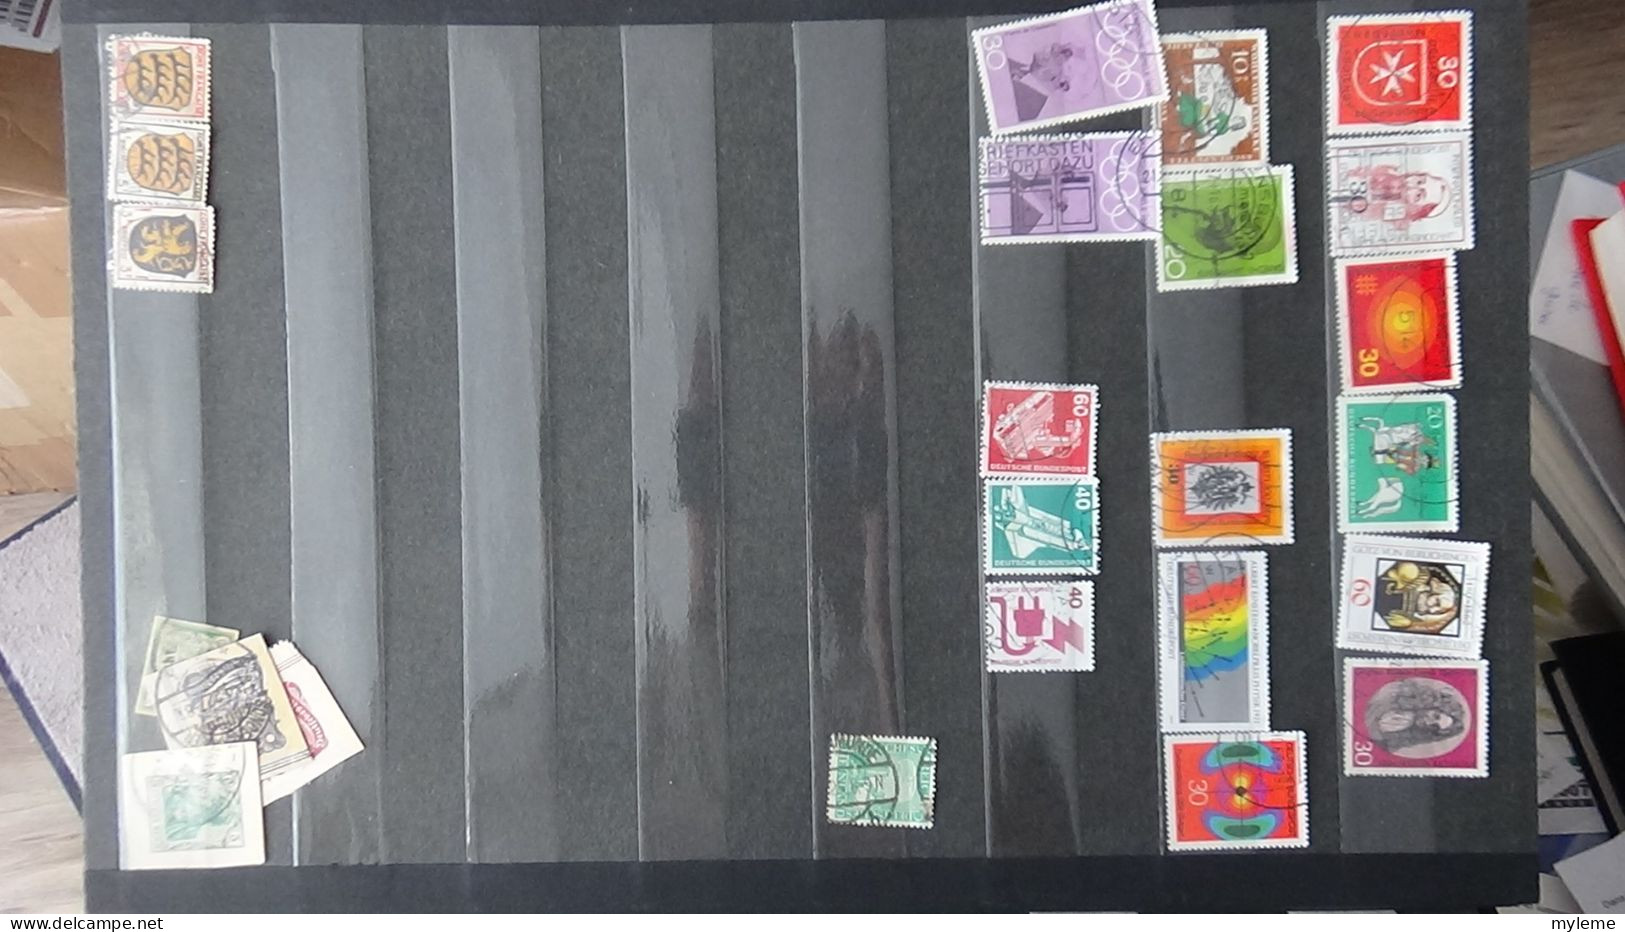 BF5 Collection de timbres oblitérés + plaquette de timbres ** de France. A saisir !!!